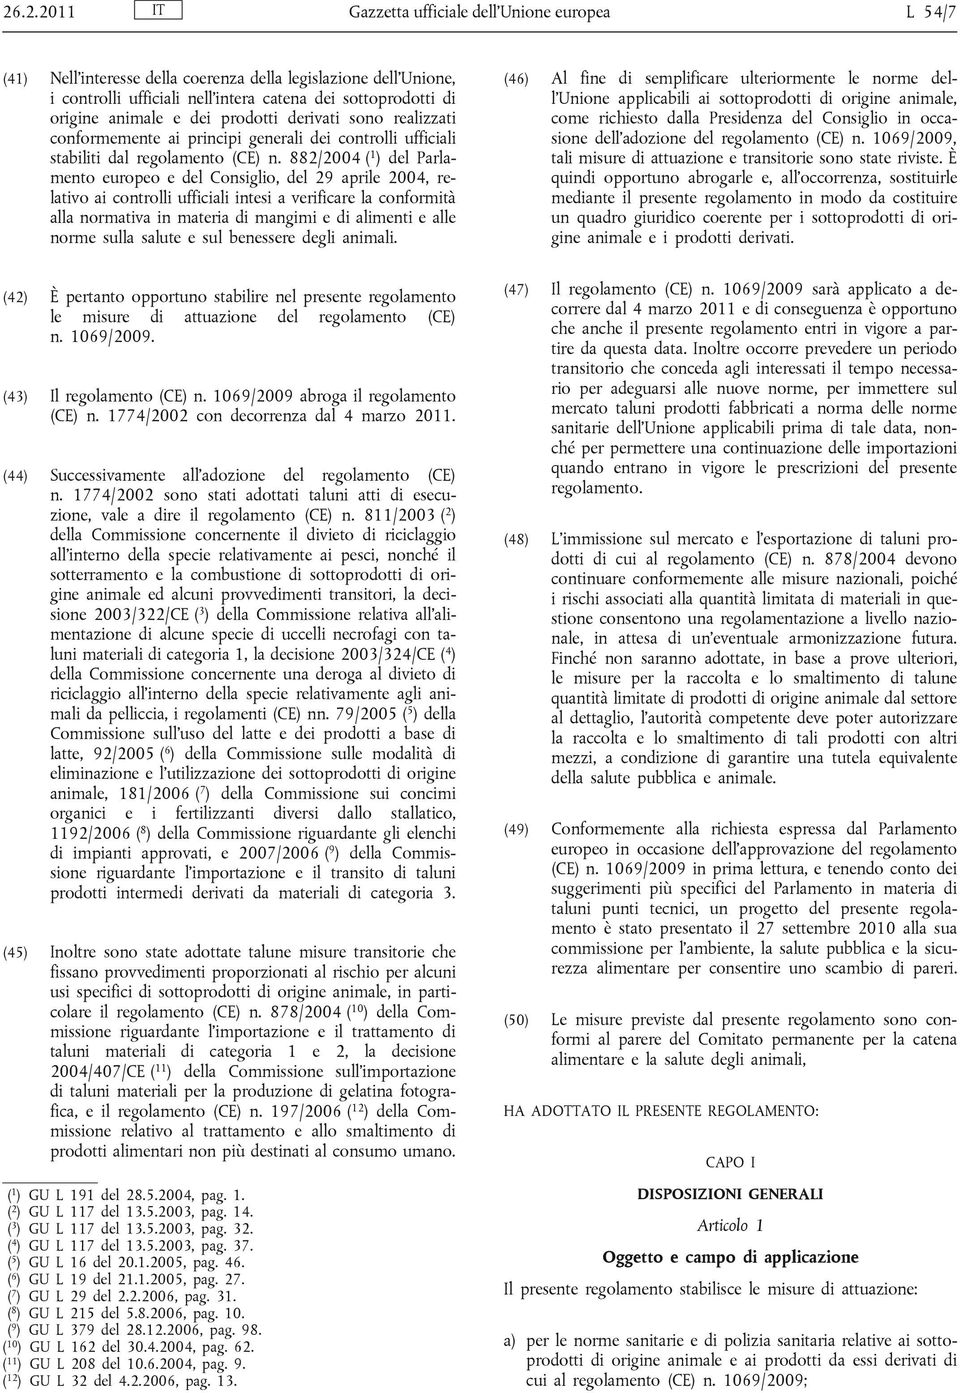 882/2004 ( 1 ) del Parlamento europeo e del Consiglio, del 29 aprile 2004, relativo ai controlli ufficiali intesi a verificare la conformità alla normativa in materia di mangimi e di alimenti e alle